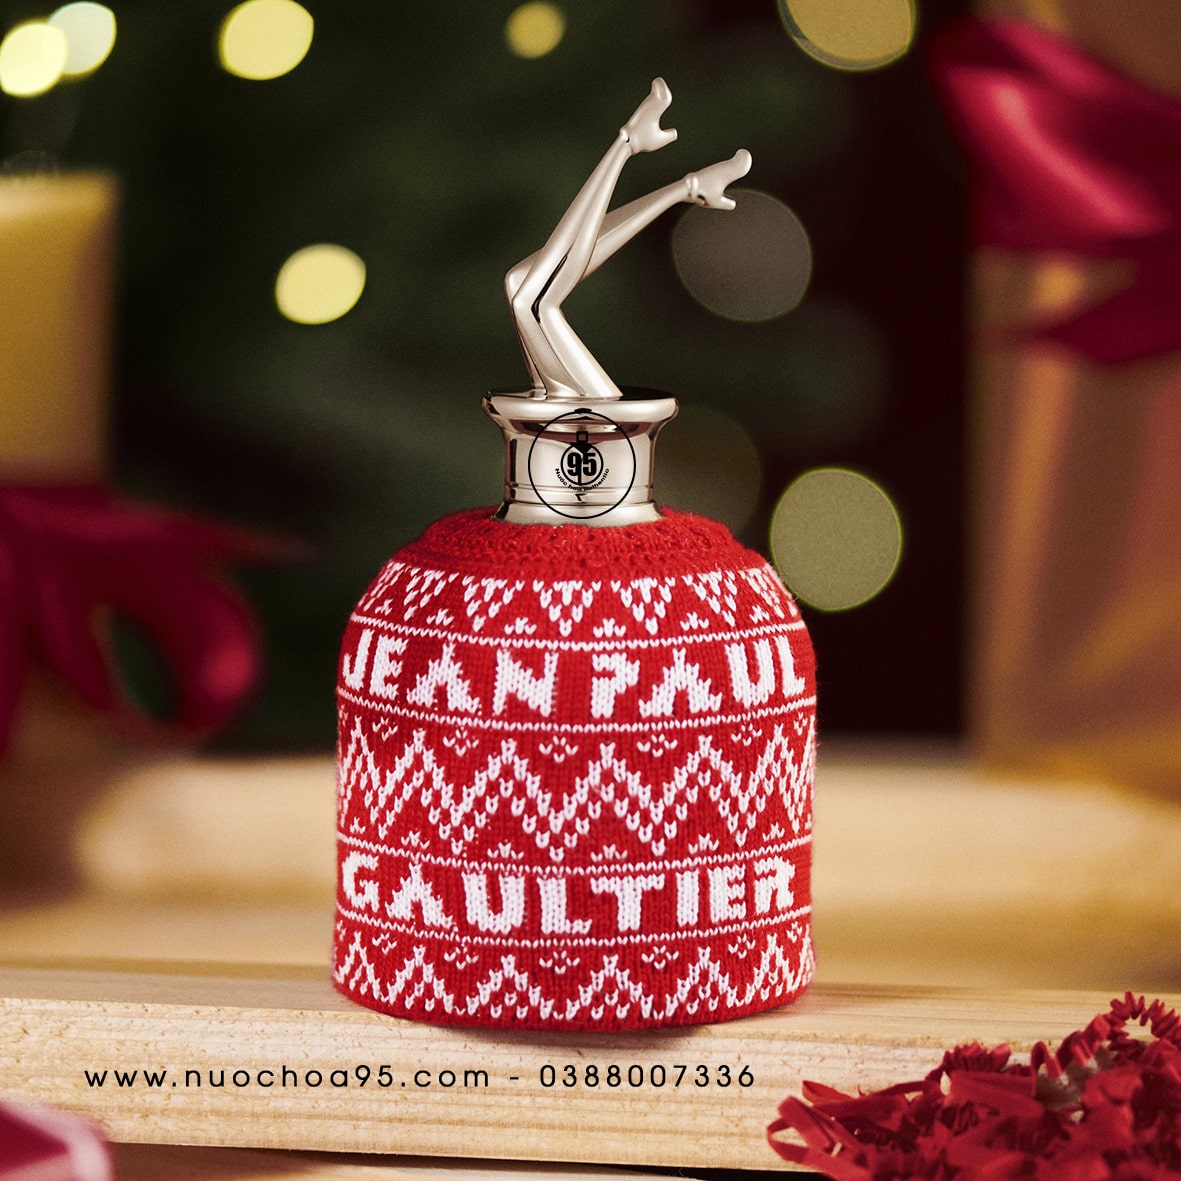 Nước hoa Jean Paul Gaultier Scandal Xmas Limited Edition 2021 - Ảnh 2